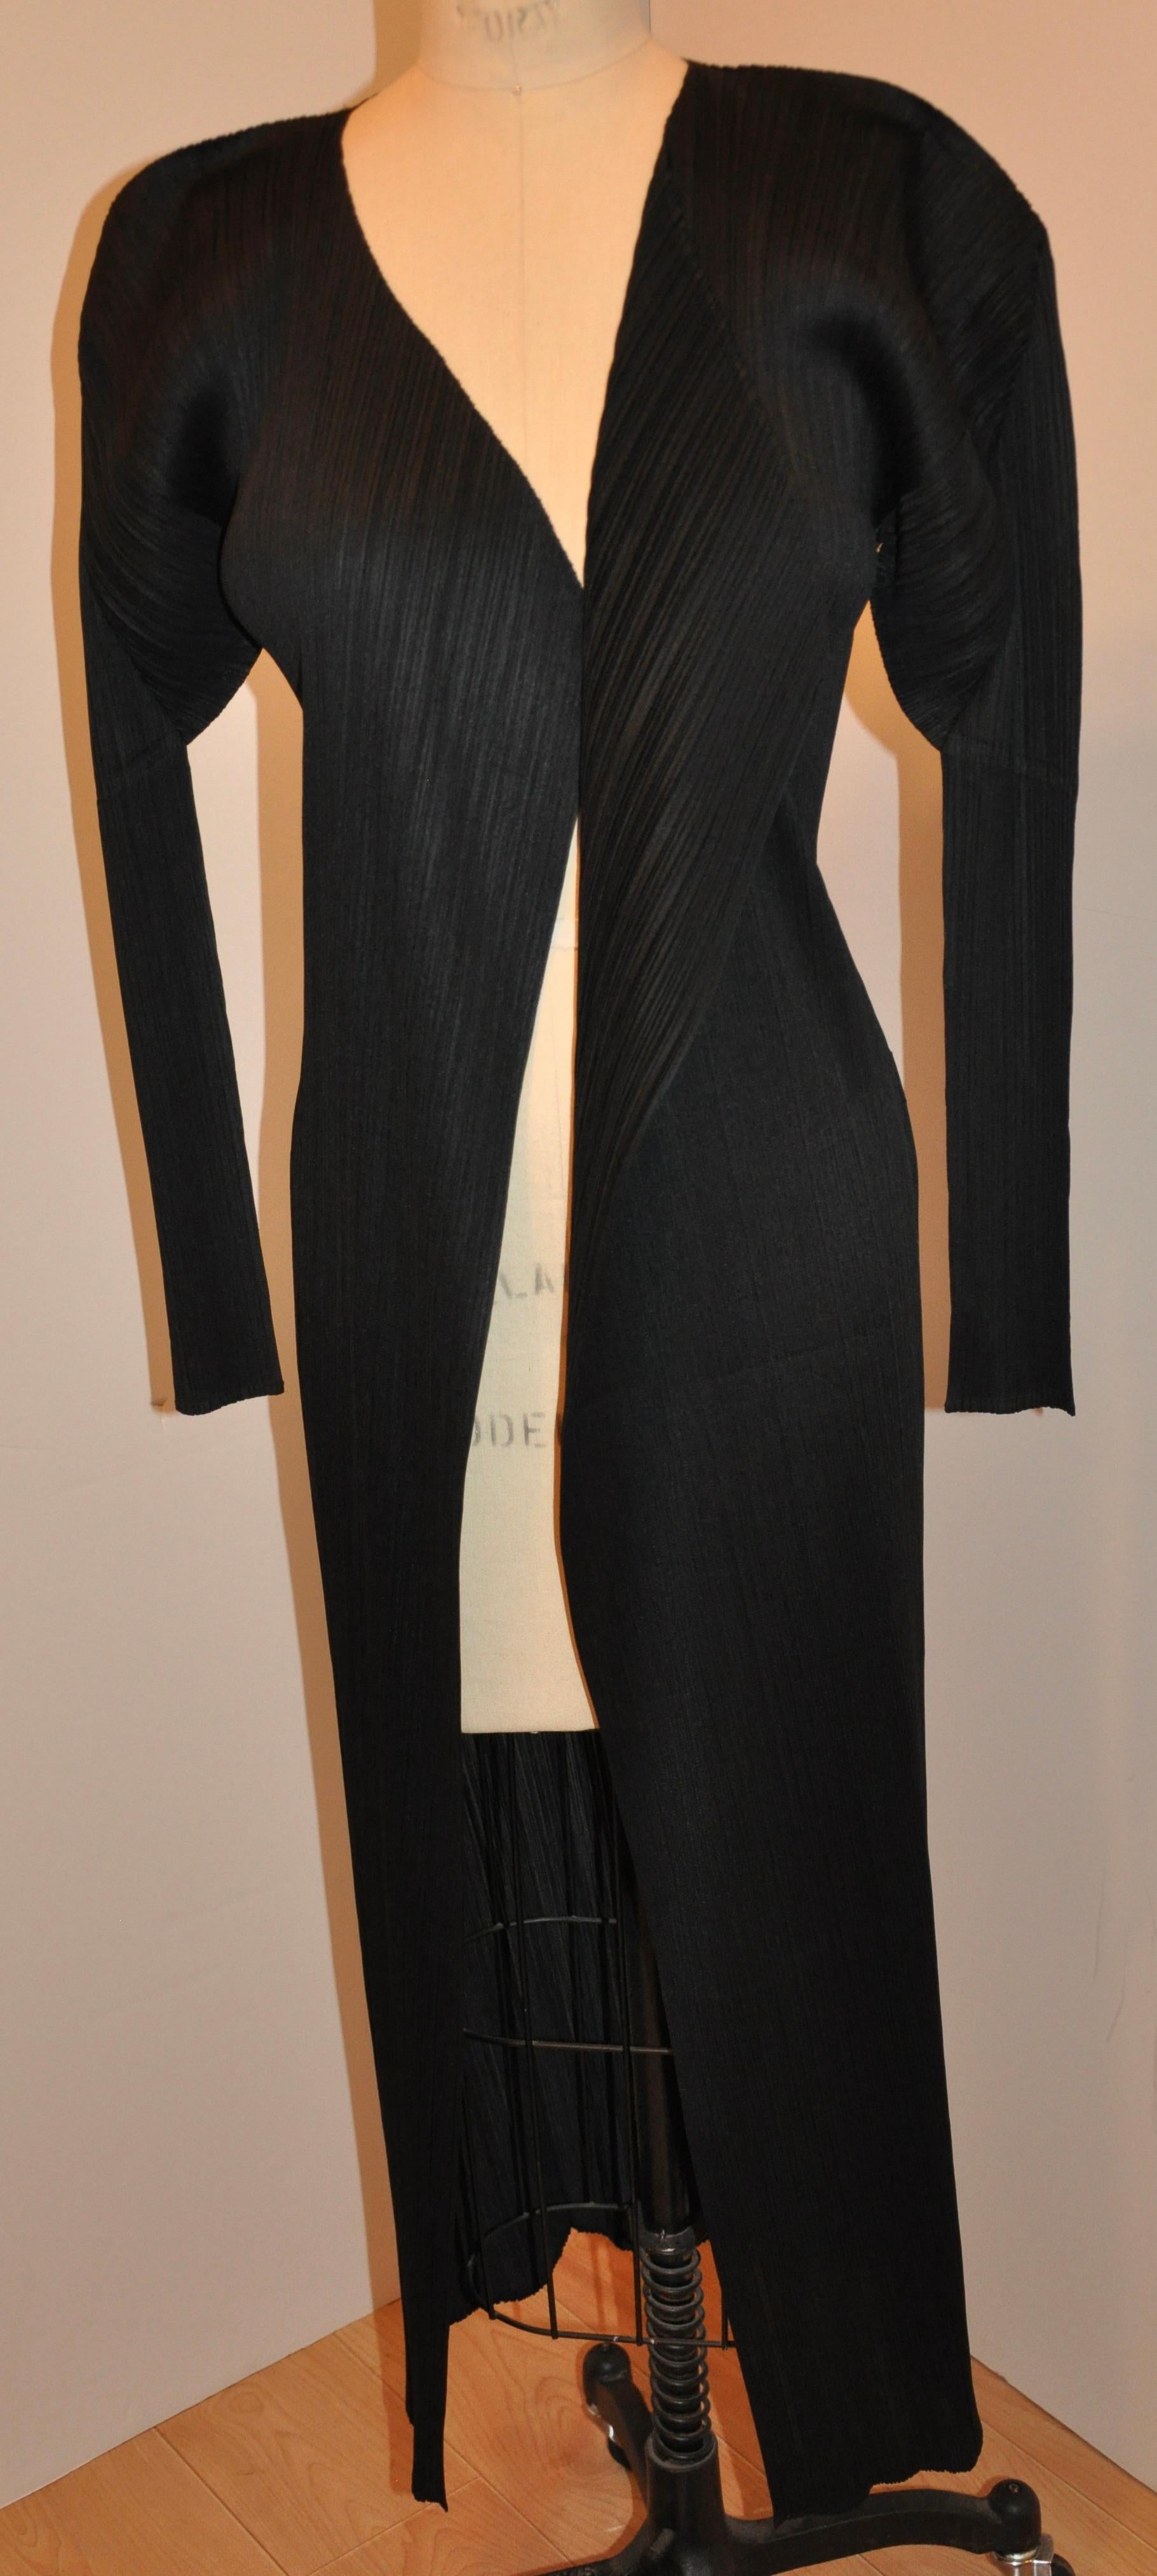    Issey Miyake wunderbarer, ikonischer, tiefschwarzer, plissierter, offener Mantel mit einer Länge von 44 cm vorne und 50 cm hinten. Die Schultern sind 17 1/2 Zoll breit, der Achselumfang ist 36 Zoll, die Taille ist 32 Zoll, die Hüften sind 36